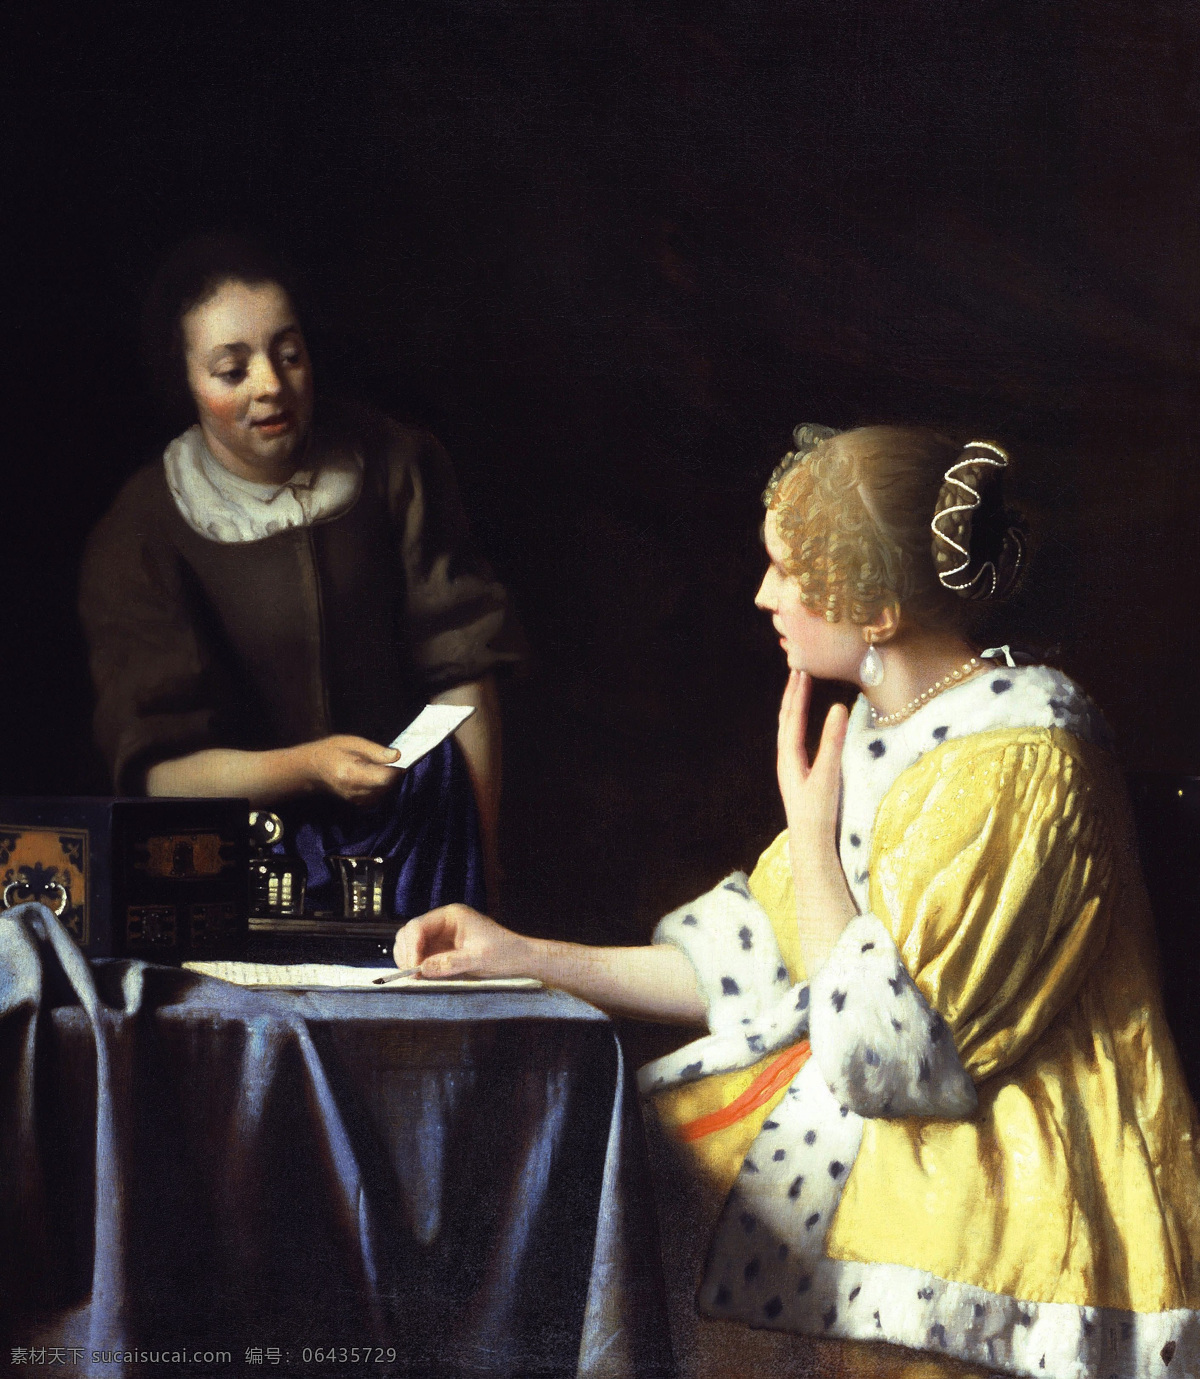 约翰内斯 维 米尔 作品 夫人 女仆 拿着信 巴洛克式的 荷兰黄金时代 荷兰画家 弗里克收藏 流派艺术 女孩女人 信 绘画书法 文化艺术